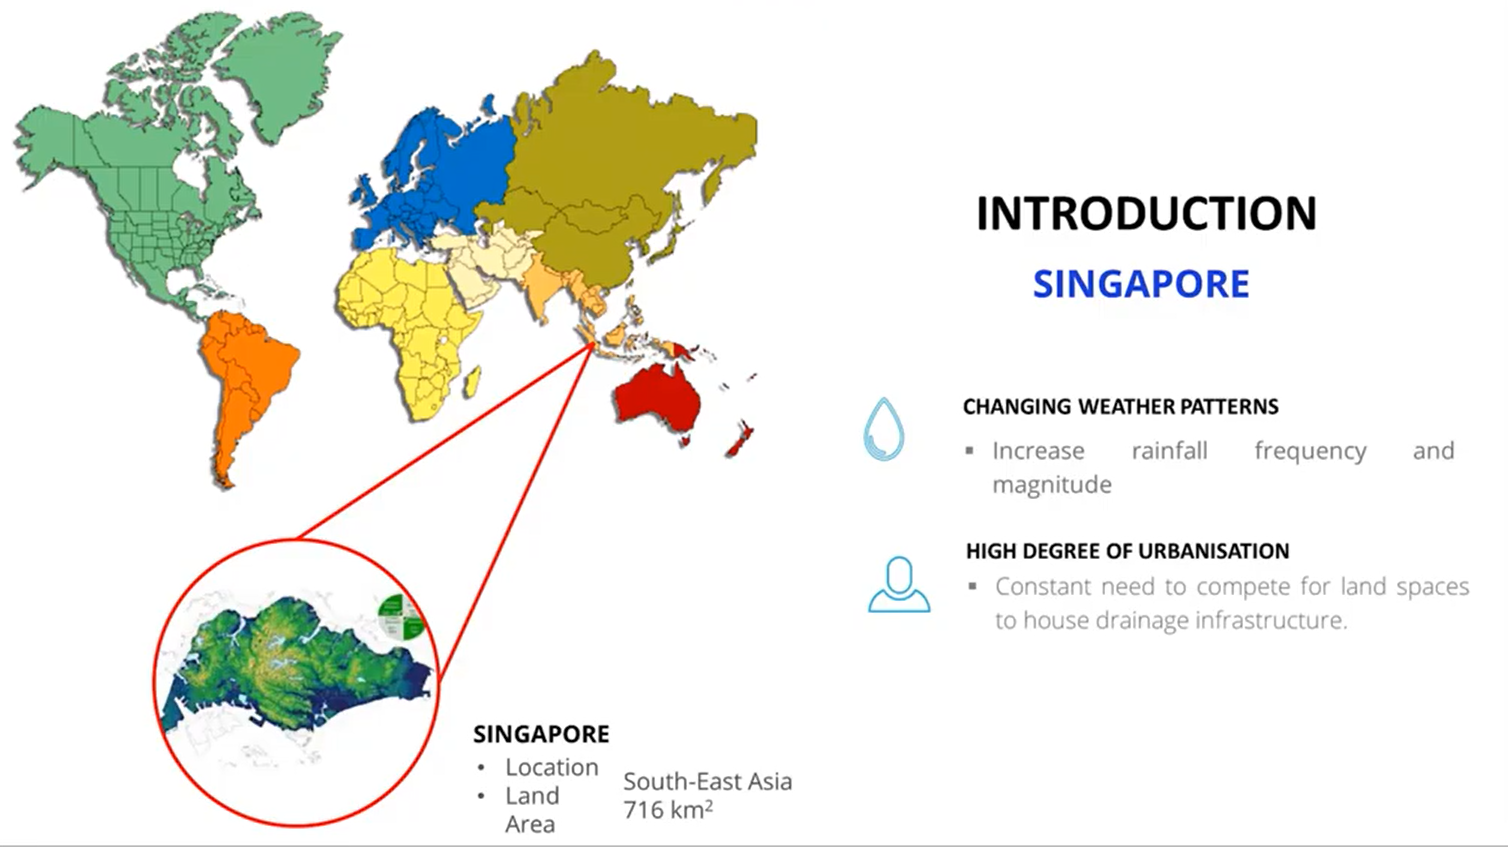 圖 2、新加坡簡介(Teo, K.W, 2020)